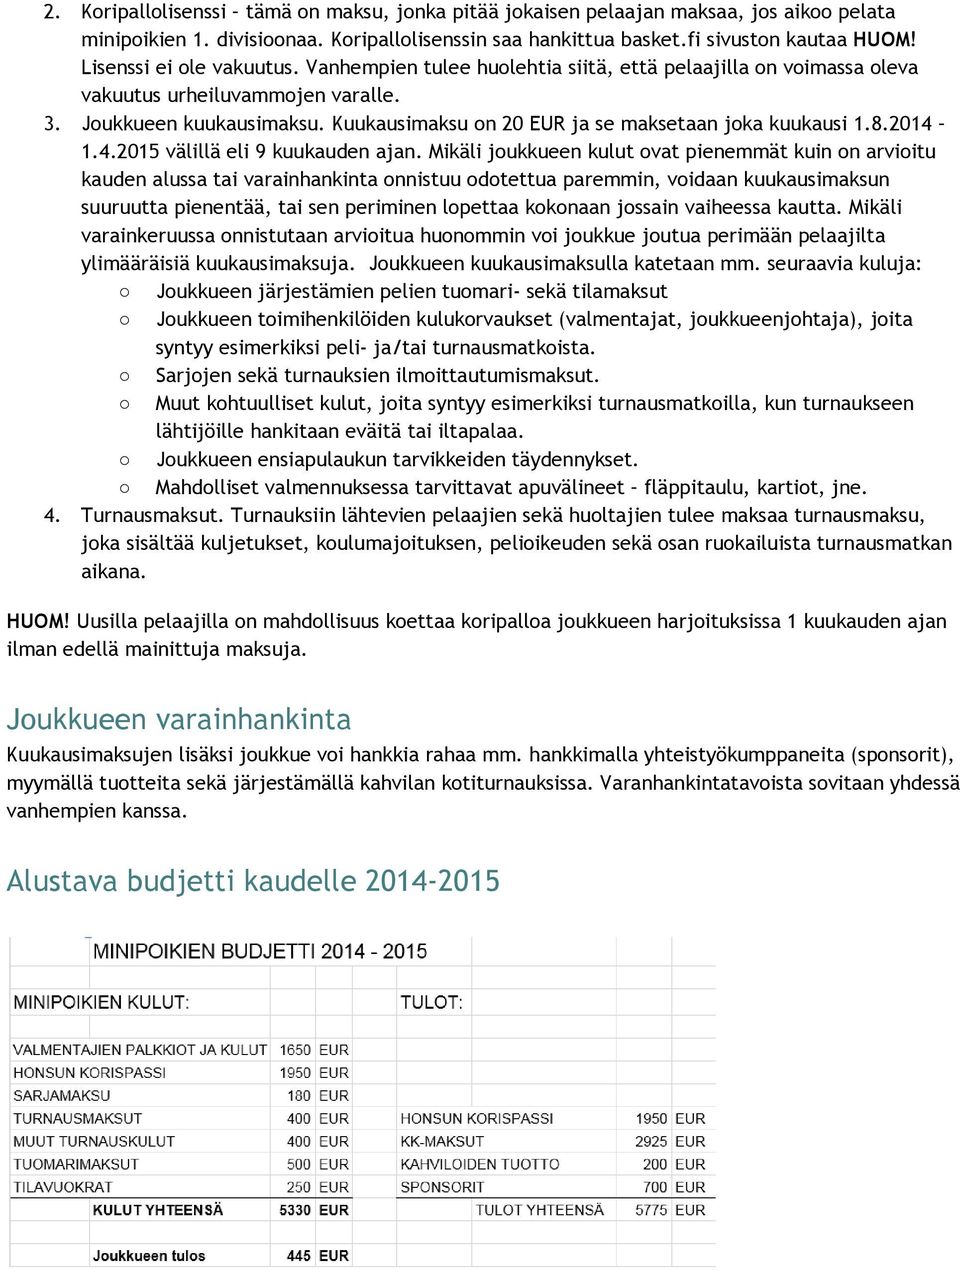 Kuukausimaksu on 20 EUR ja se maksetaan joka kuukausi 1.8.2014 1.4.2015 välillä eli 9 kuukauden ajan.